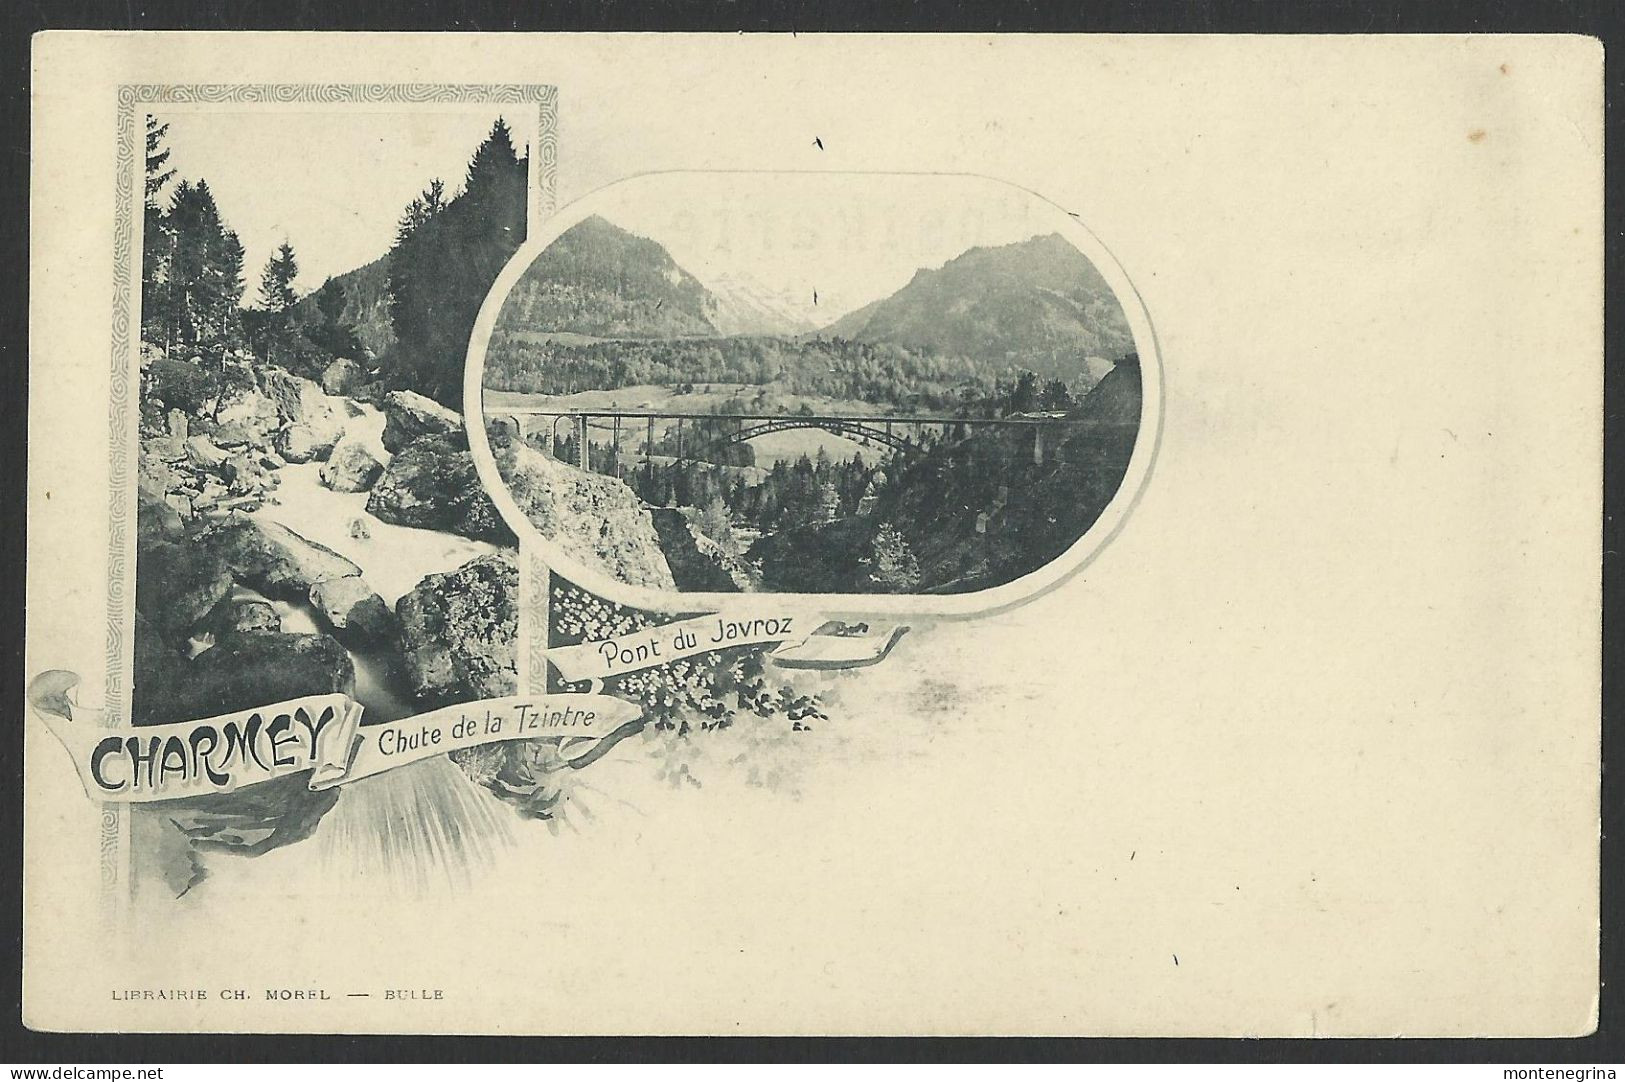 CHARMEY - Pont Du Javroz,Chute De La Tzintre - Litho - Old Postcard (see Sales Conditions) 06913 - Charmey